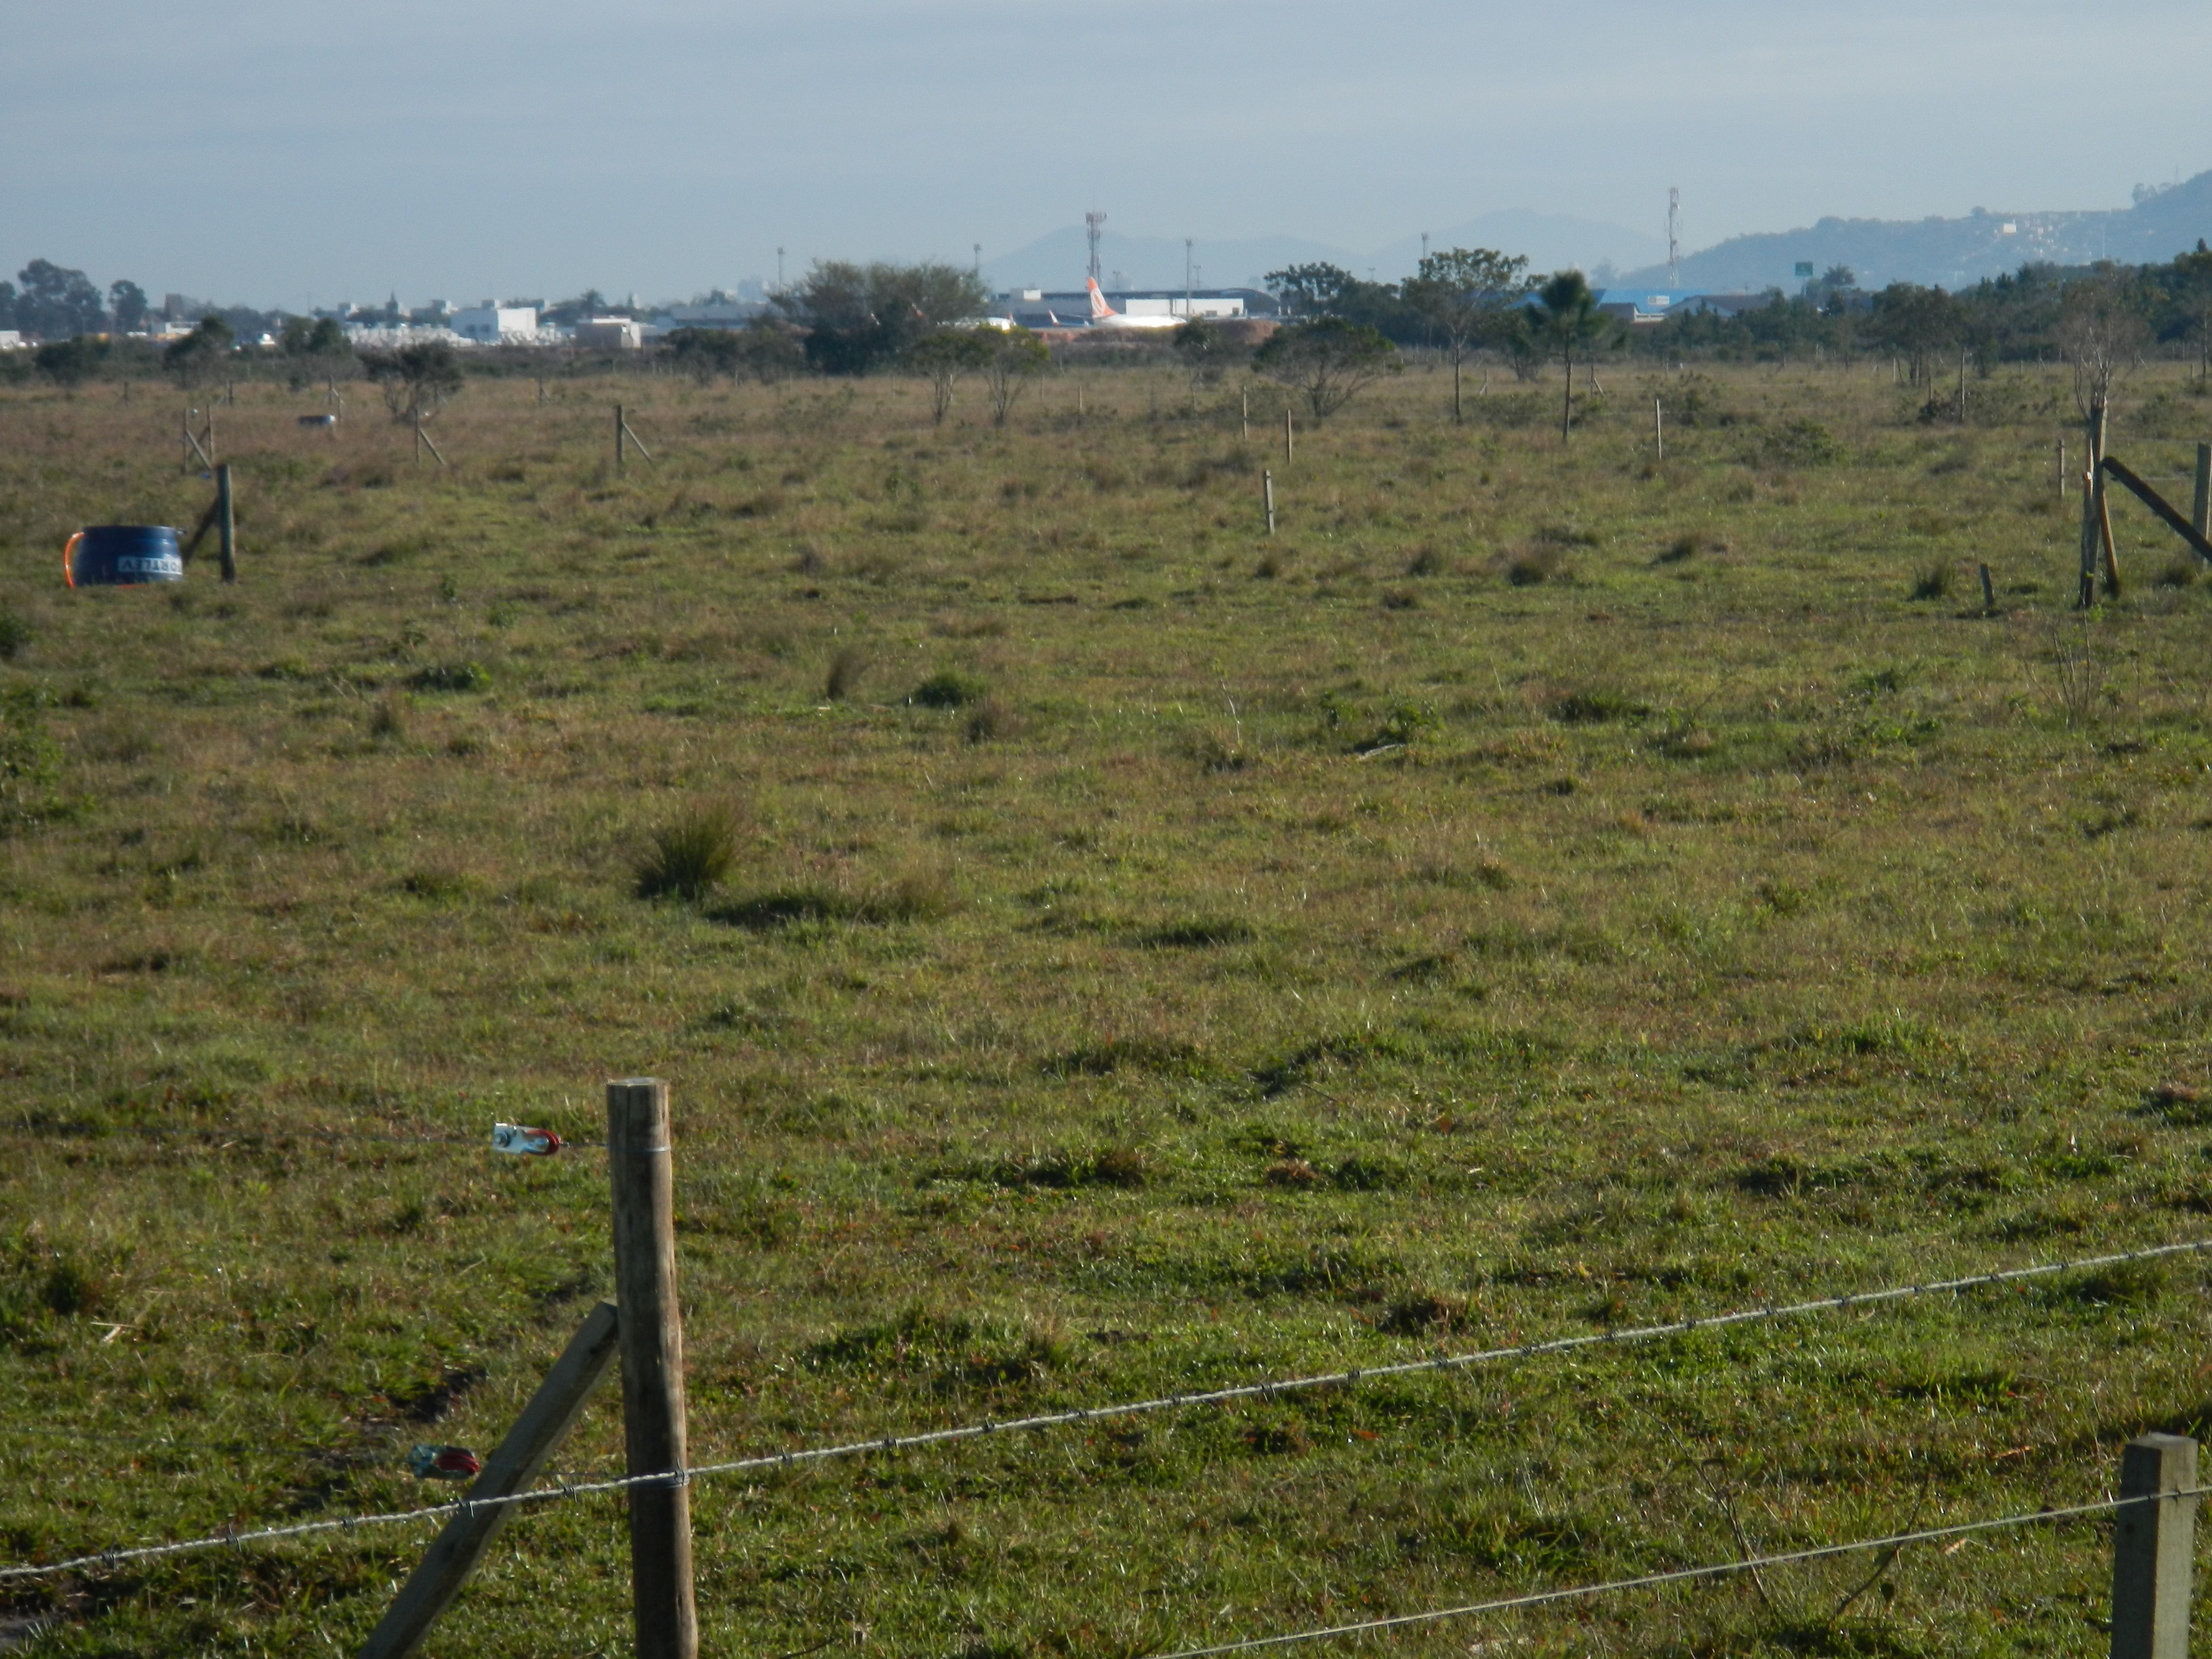 20140815 Fazenda Pastagem bovinos e aeroporto 002.jpg